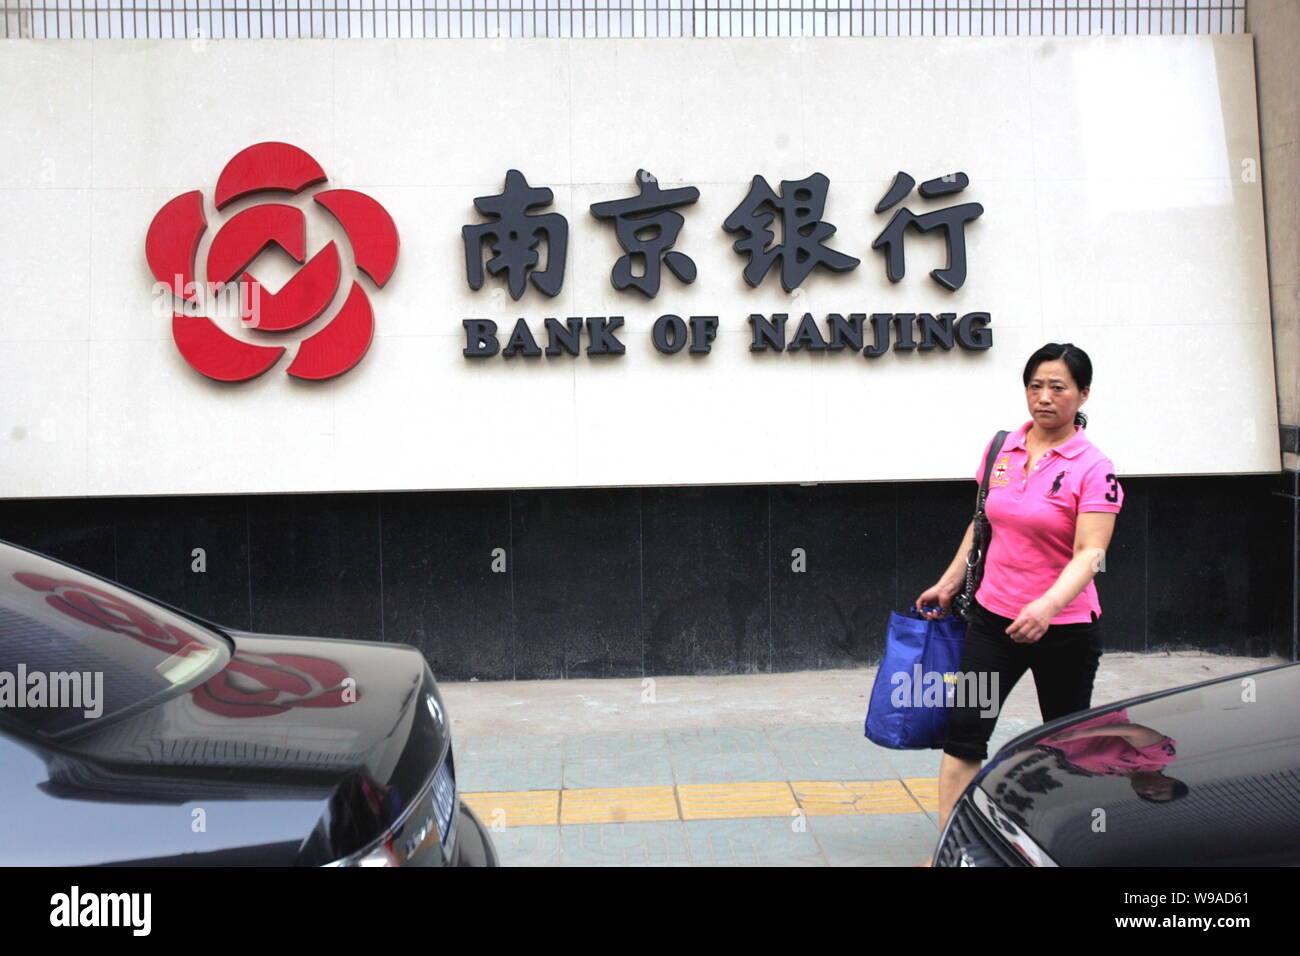 A Chinesen woman walks past a name board of Bank of Nanjing in Nanjing city, east Chinas Jiangsu Province, June 13, 2010.   Chinas securities regulato Stock Photo